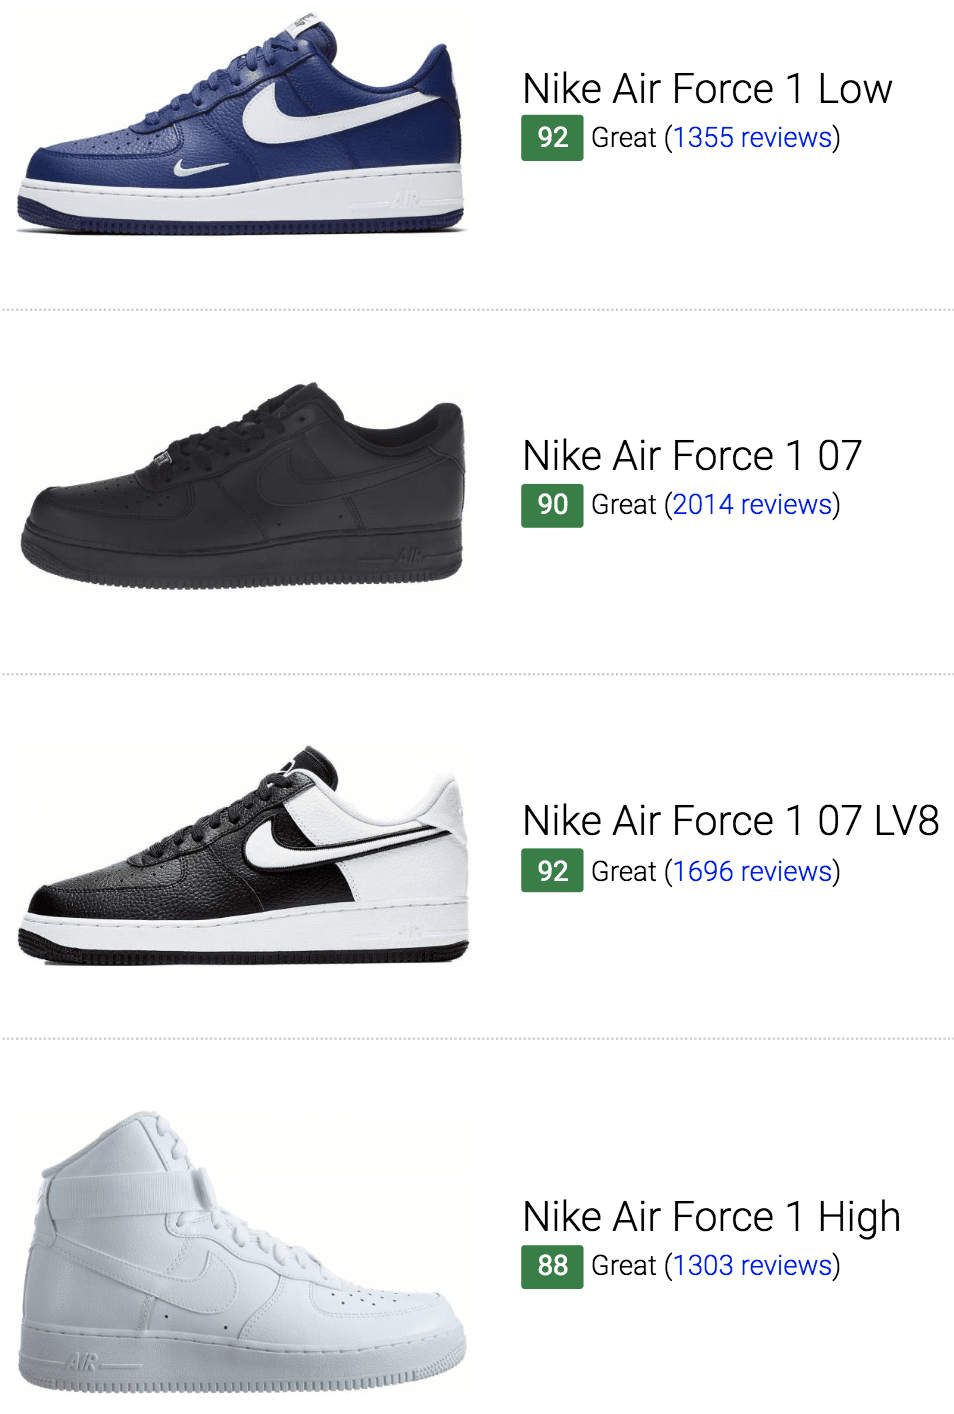 Best Nike Air Force 1 Sneakers